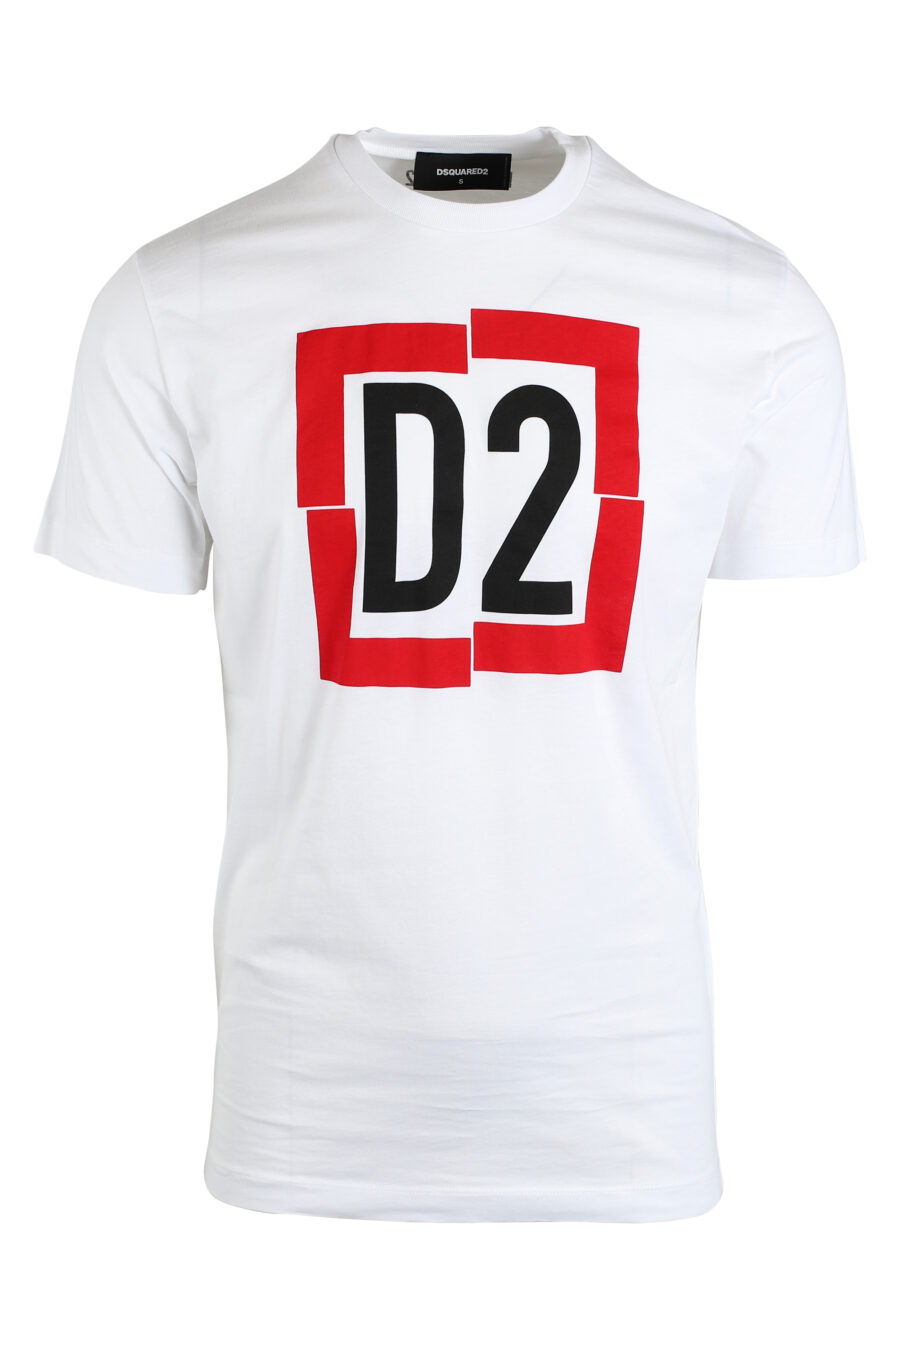 Weißes T-Shirt mit "d2"-Maxilogo im roten Quadrat - IMG 0674